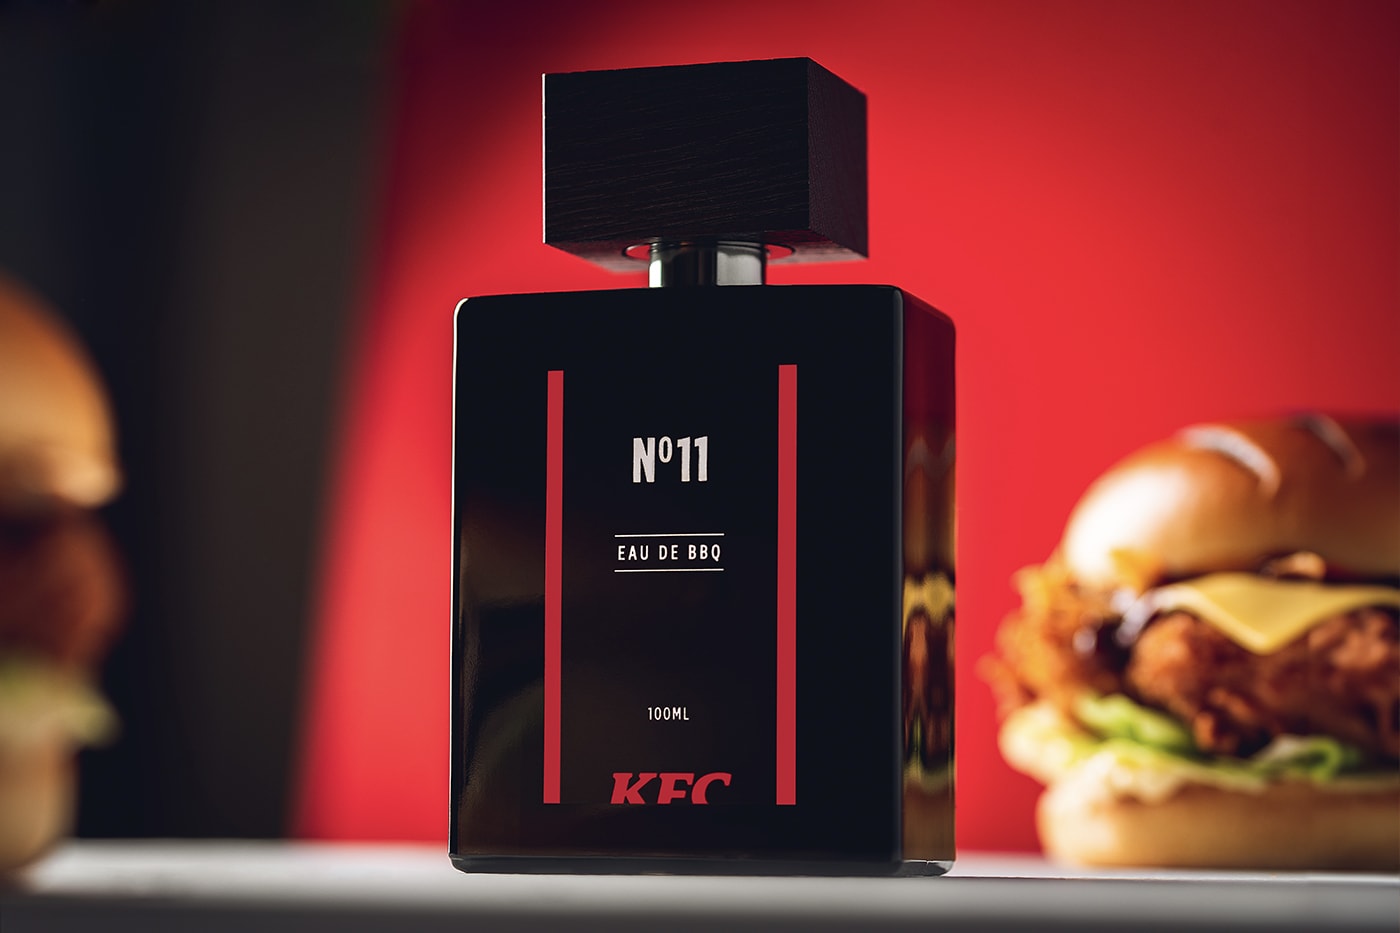 KFC No 11 Eau de BBQ Perfume Release Info